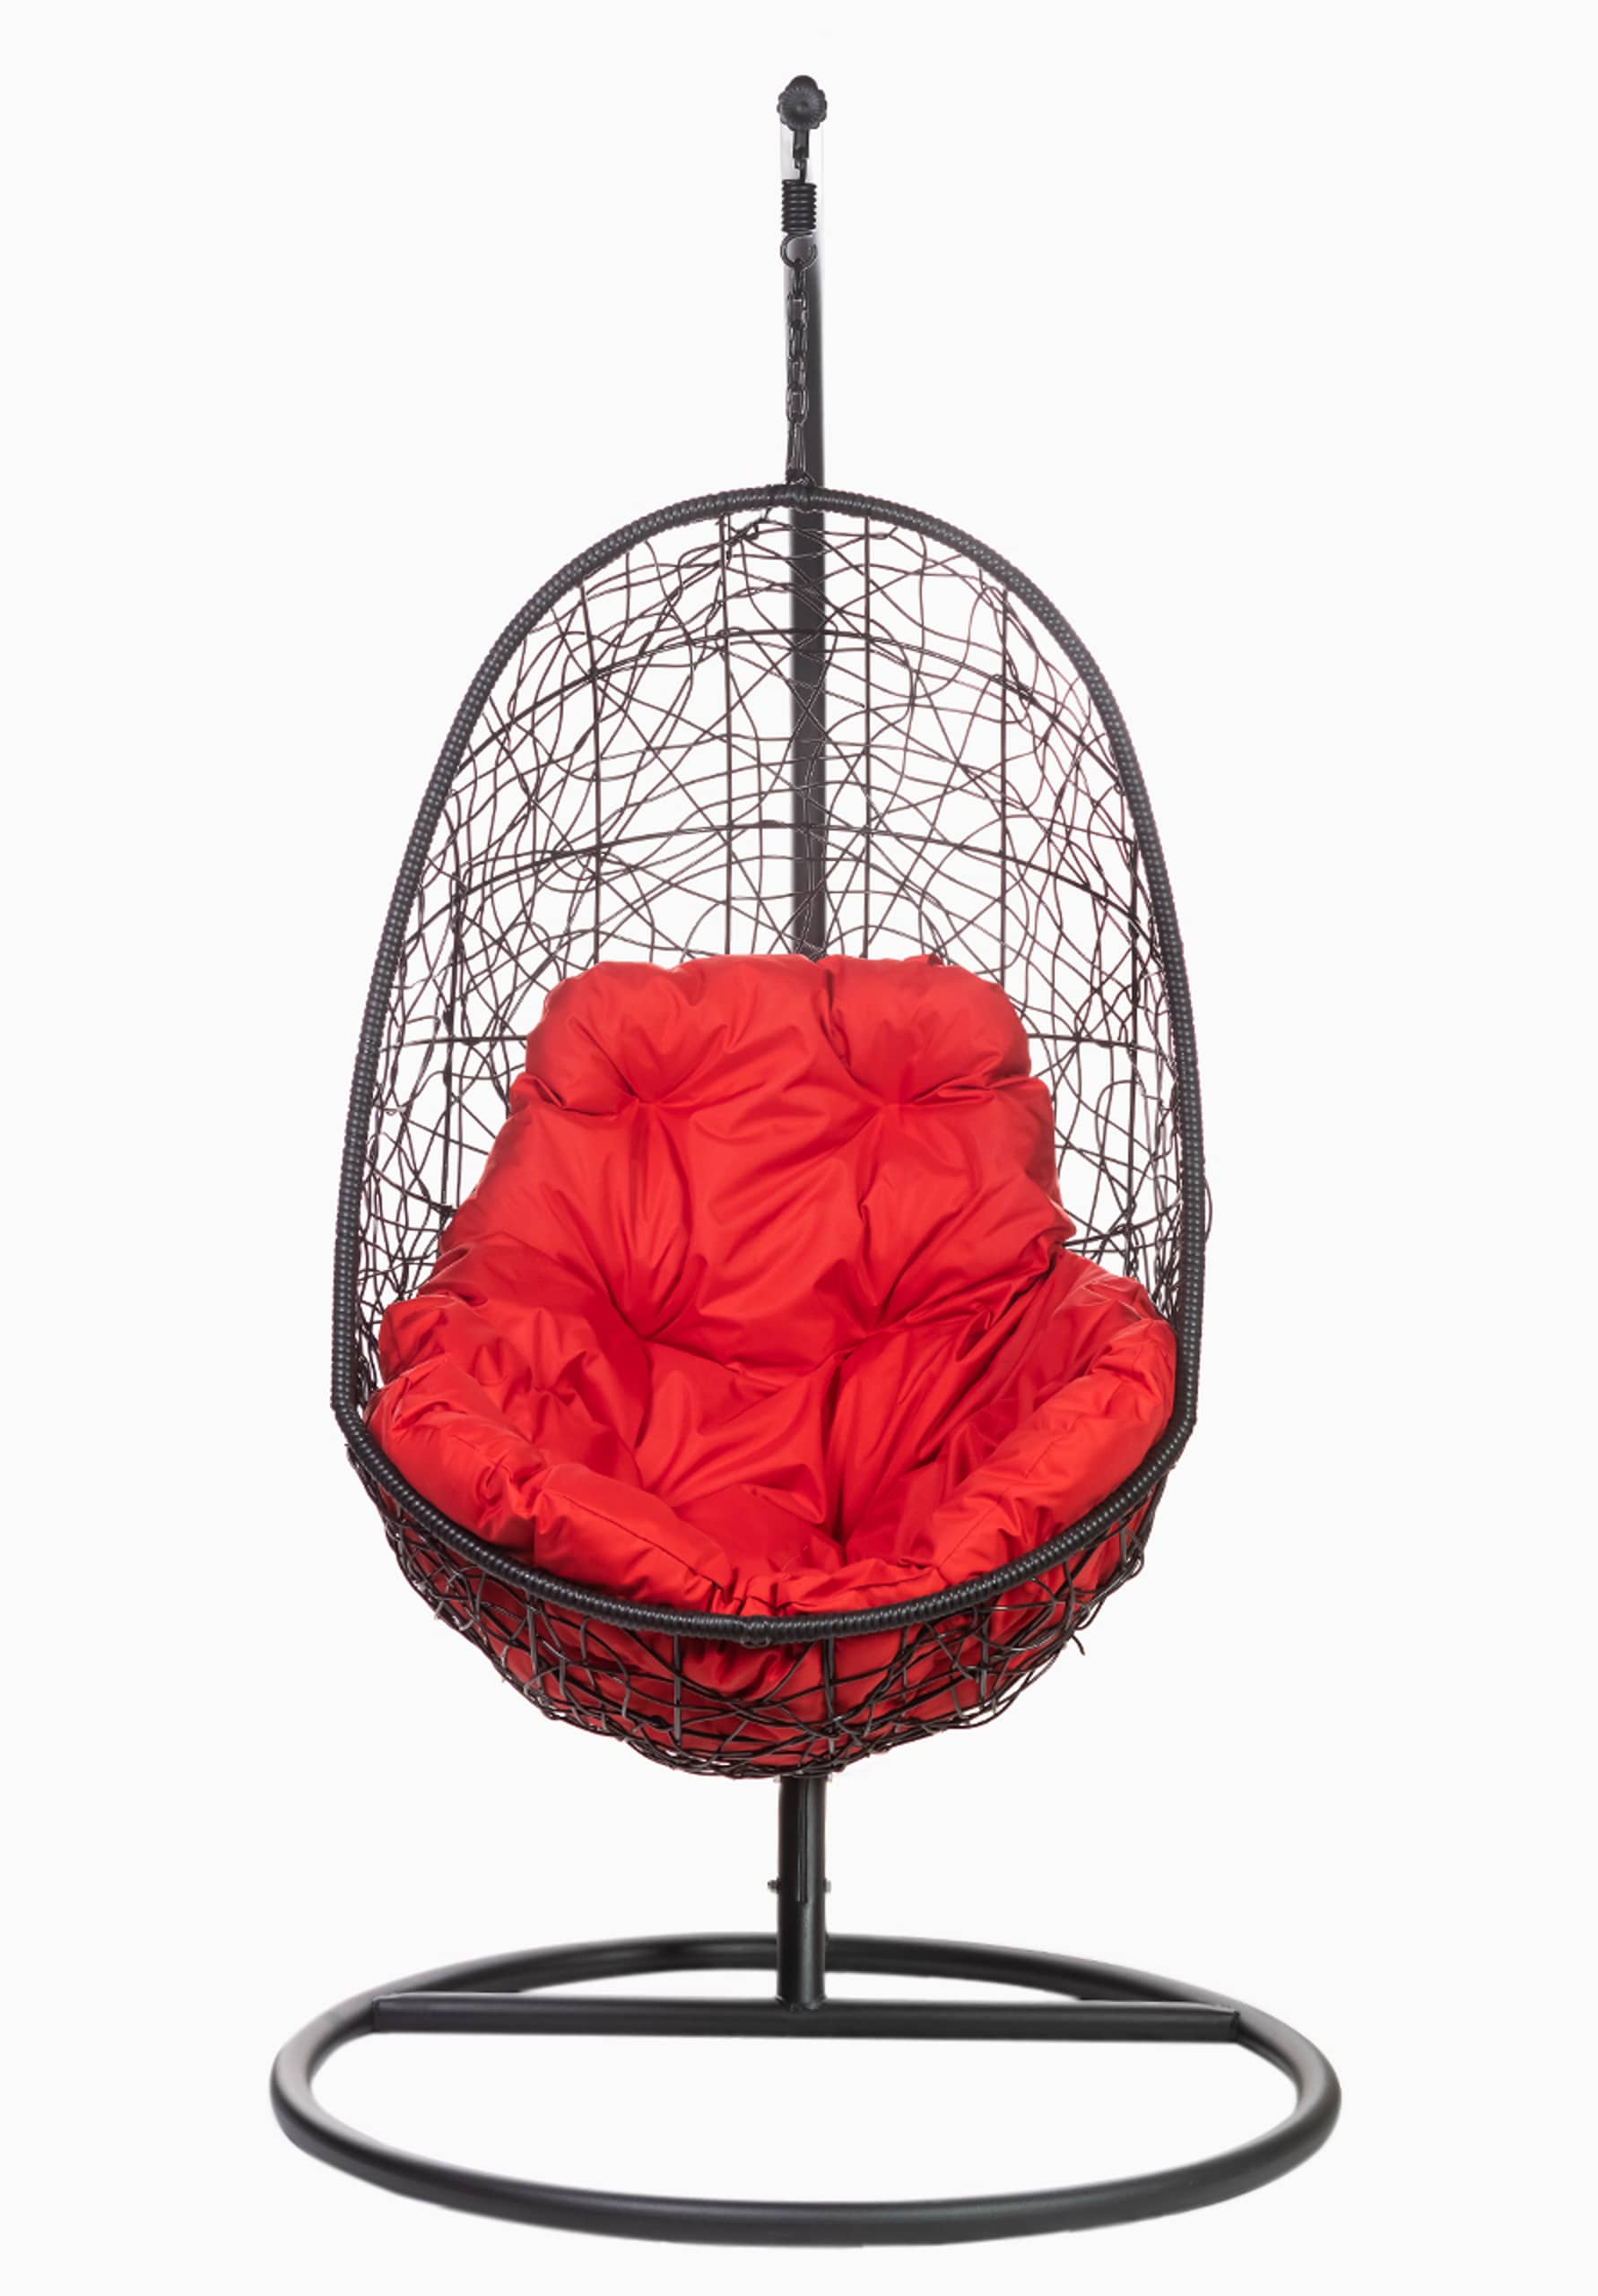 Кресло подвесное FP 0225 красная подушка - изображение 1